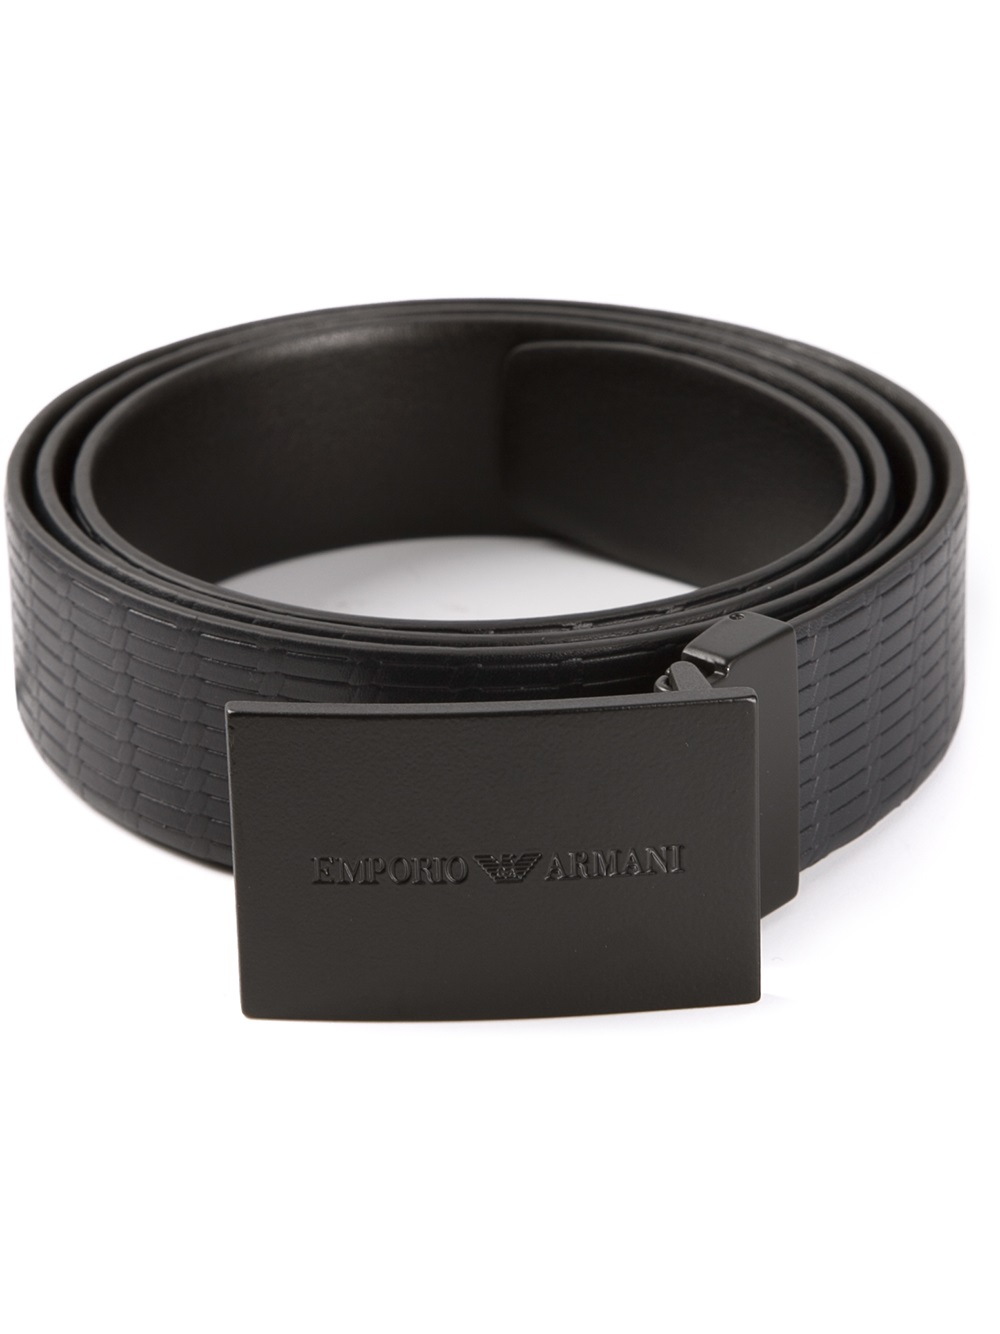 Emporio Armani Plaque Belt in Black for Men - Lyst